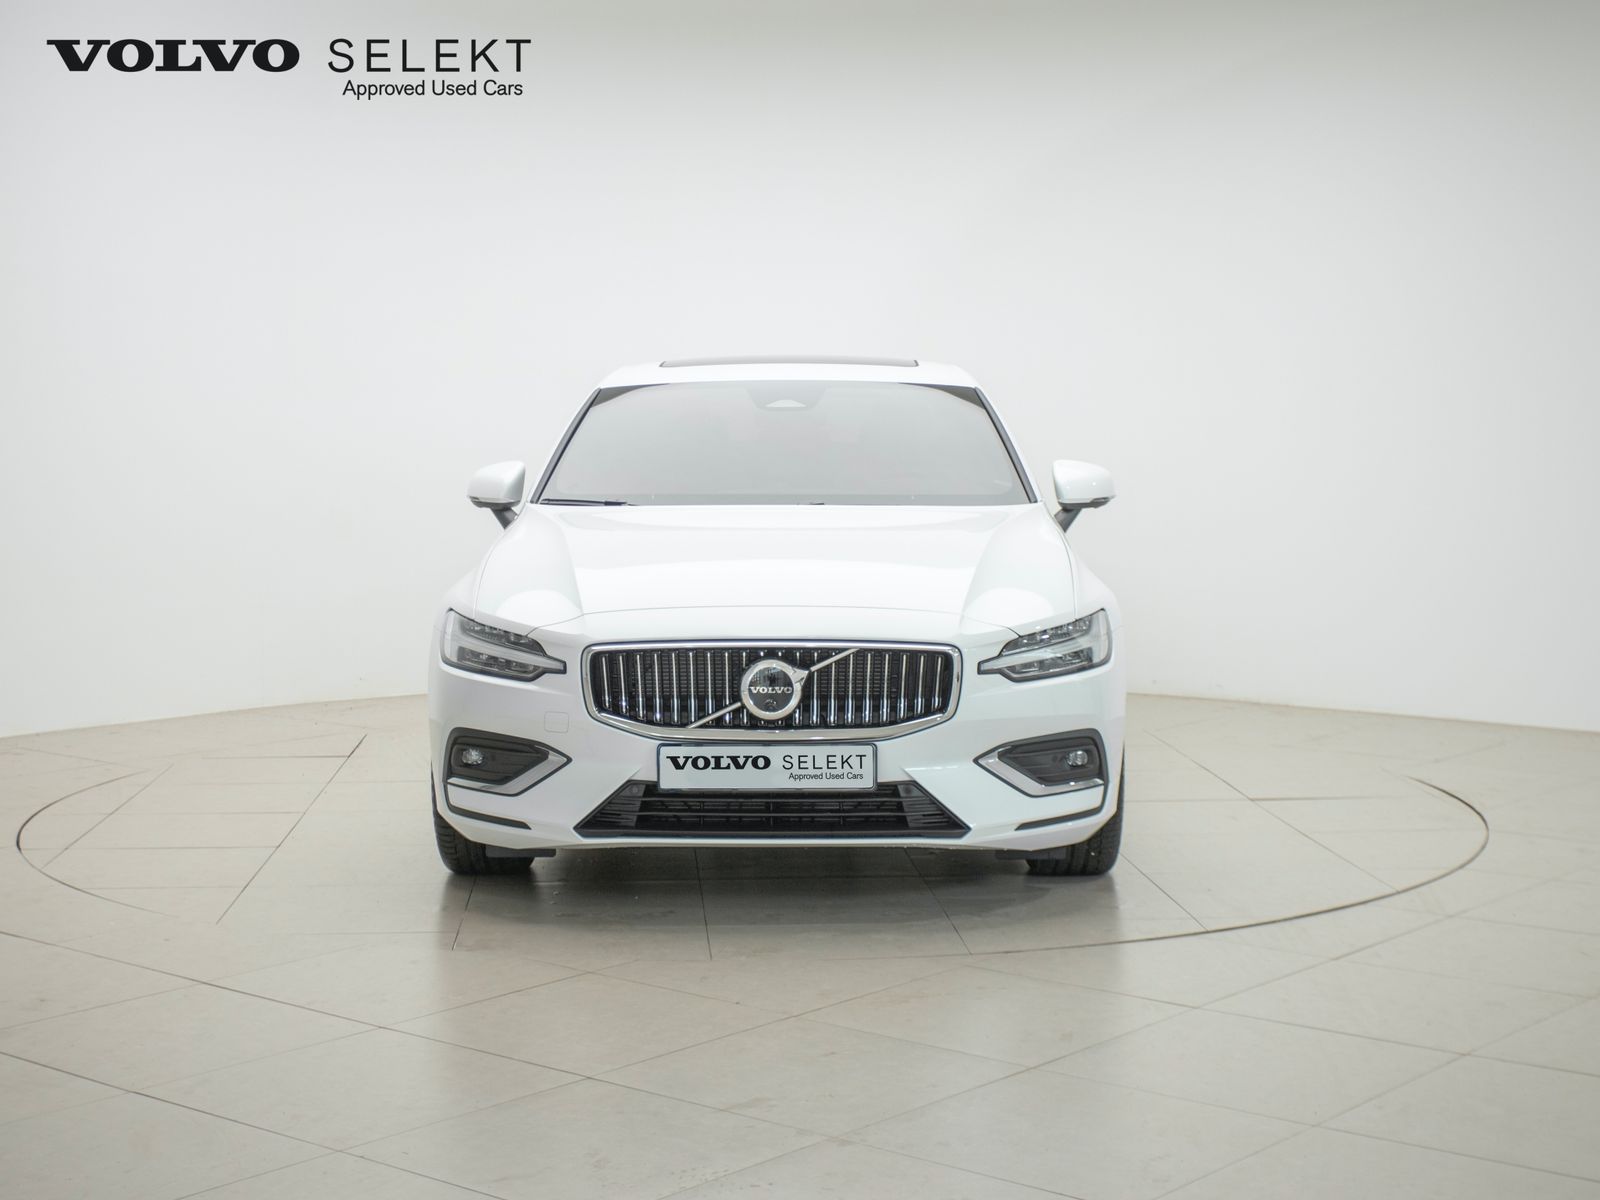 Volvo цена и характеристики фотографии и обзор – актуальная информация